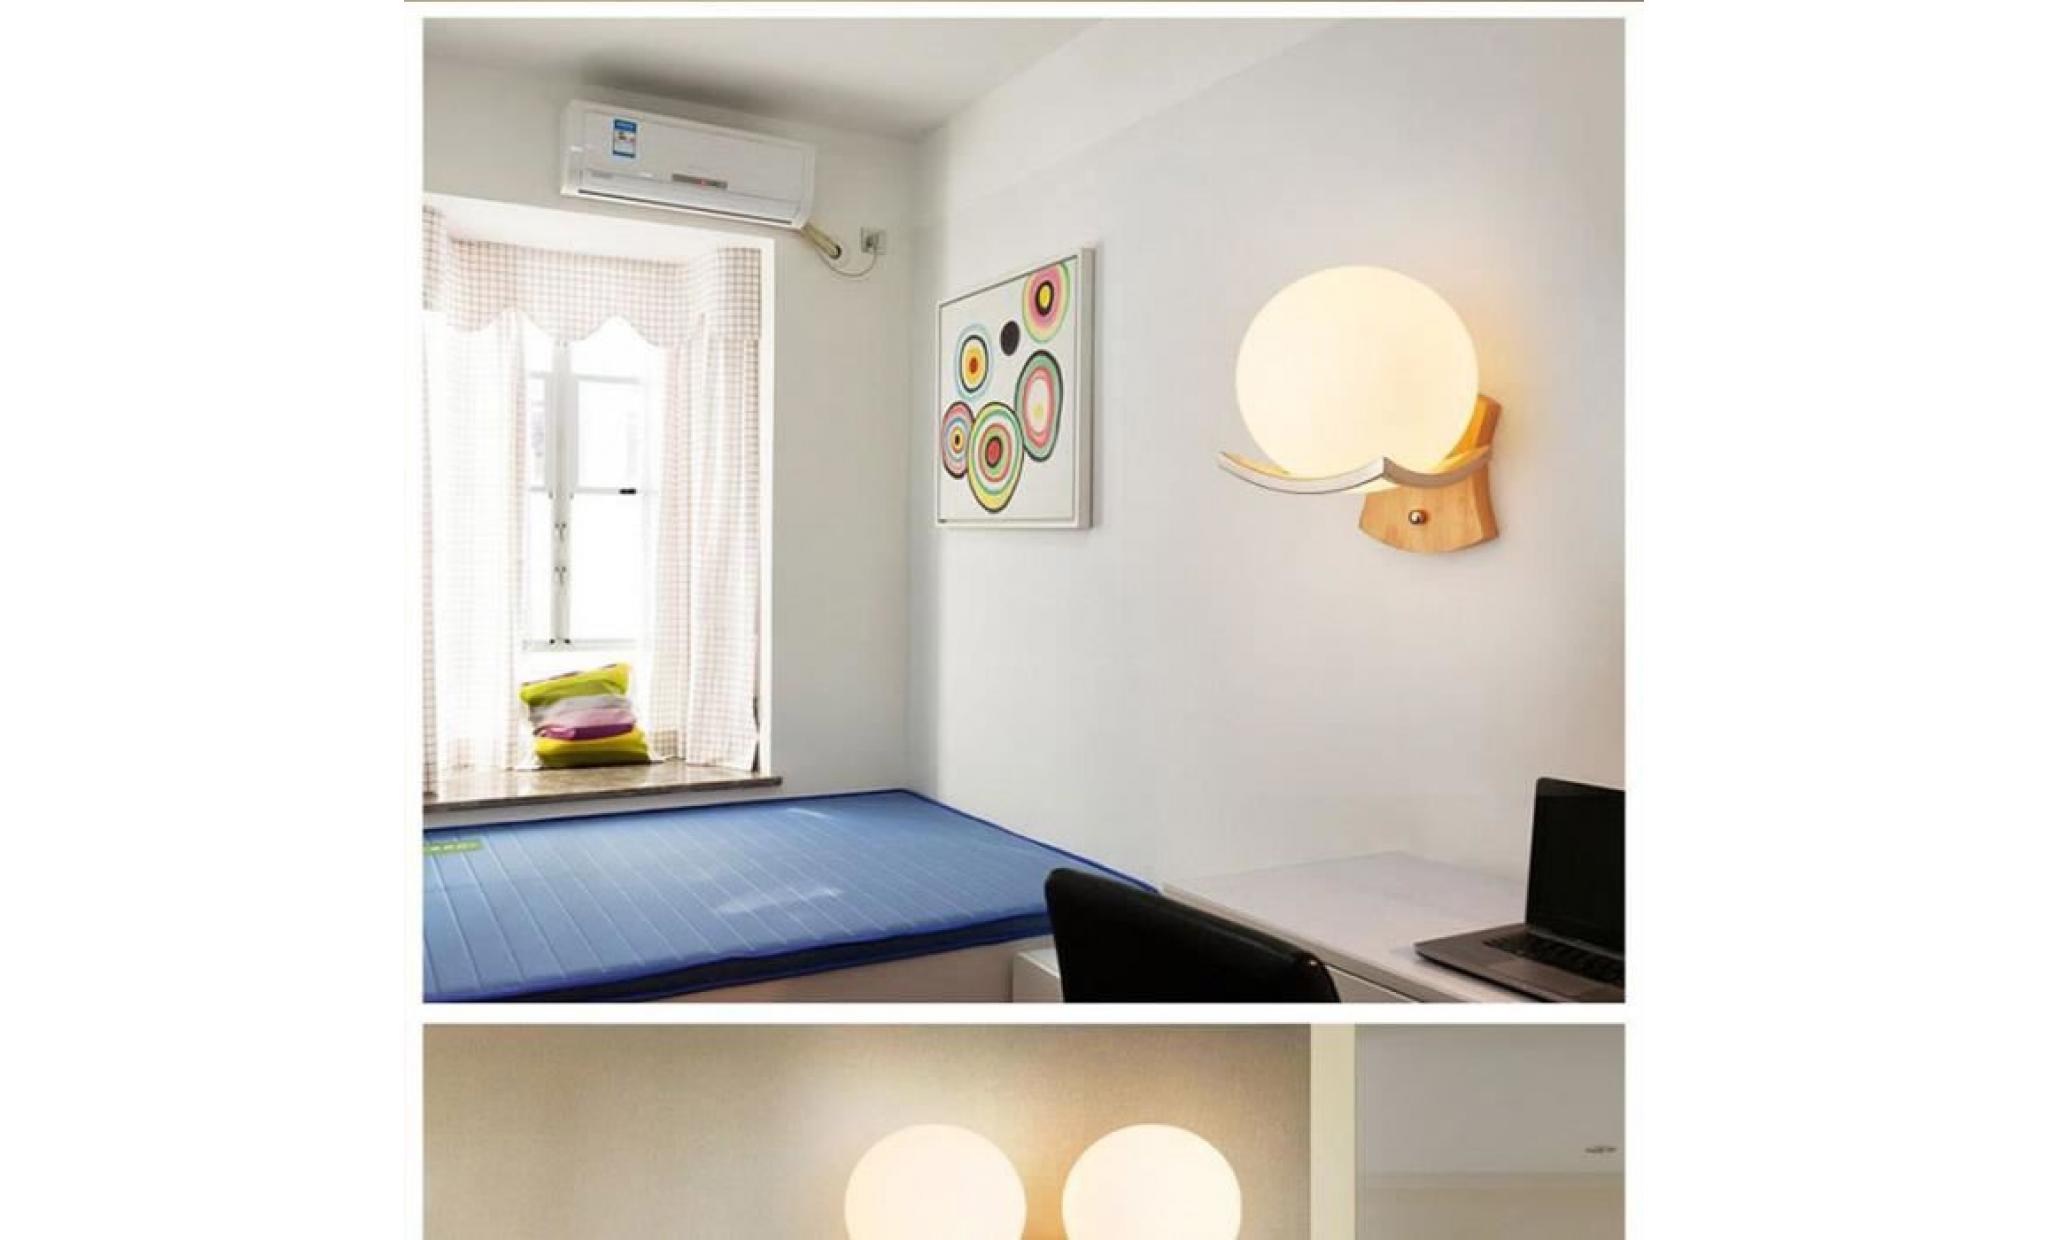 5w led applique lampe murale de boule en verre pour la simple bois massif créatif 220v pas cher